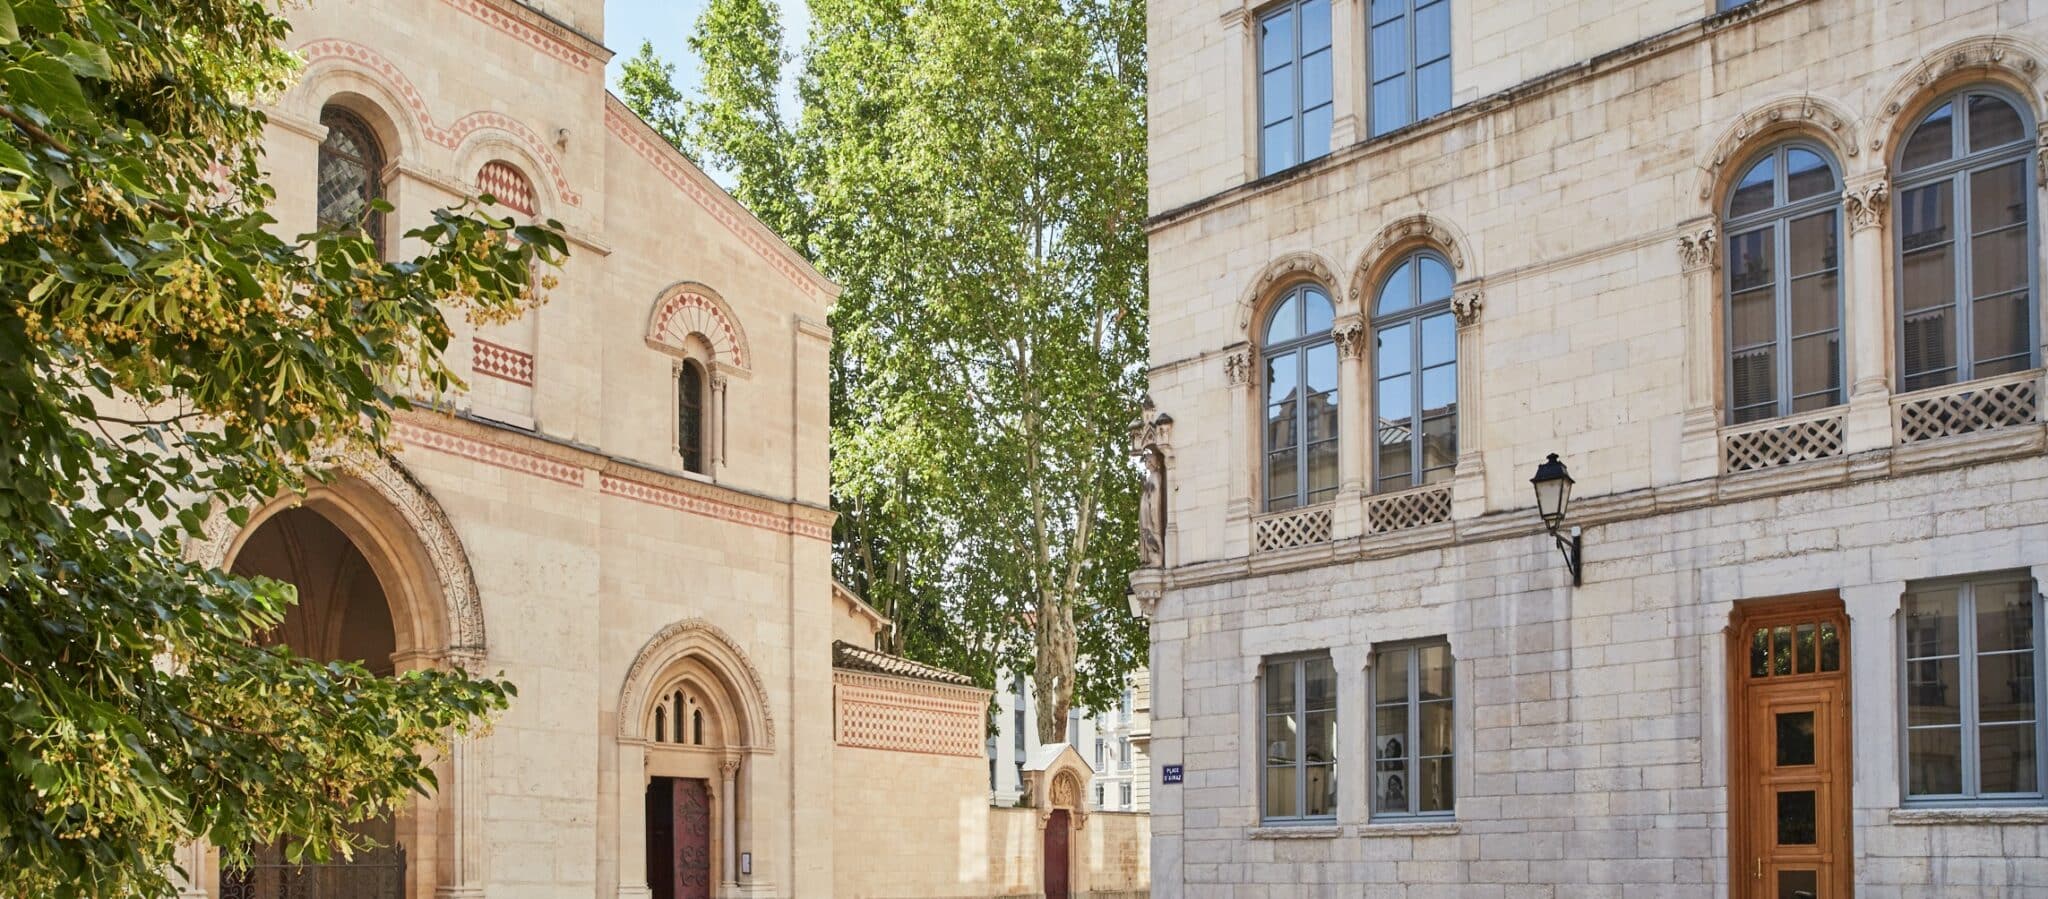 アベイ広場、左側はサン・マルティン・ダイネー修道院のファサード、右側はオテル・ド・ラベイとカフェ・バジリックのファサード。